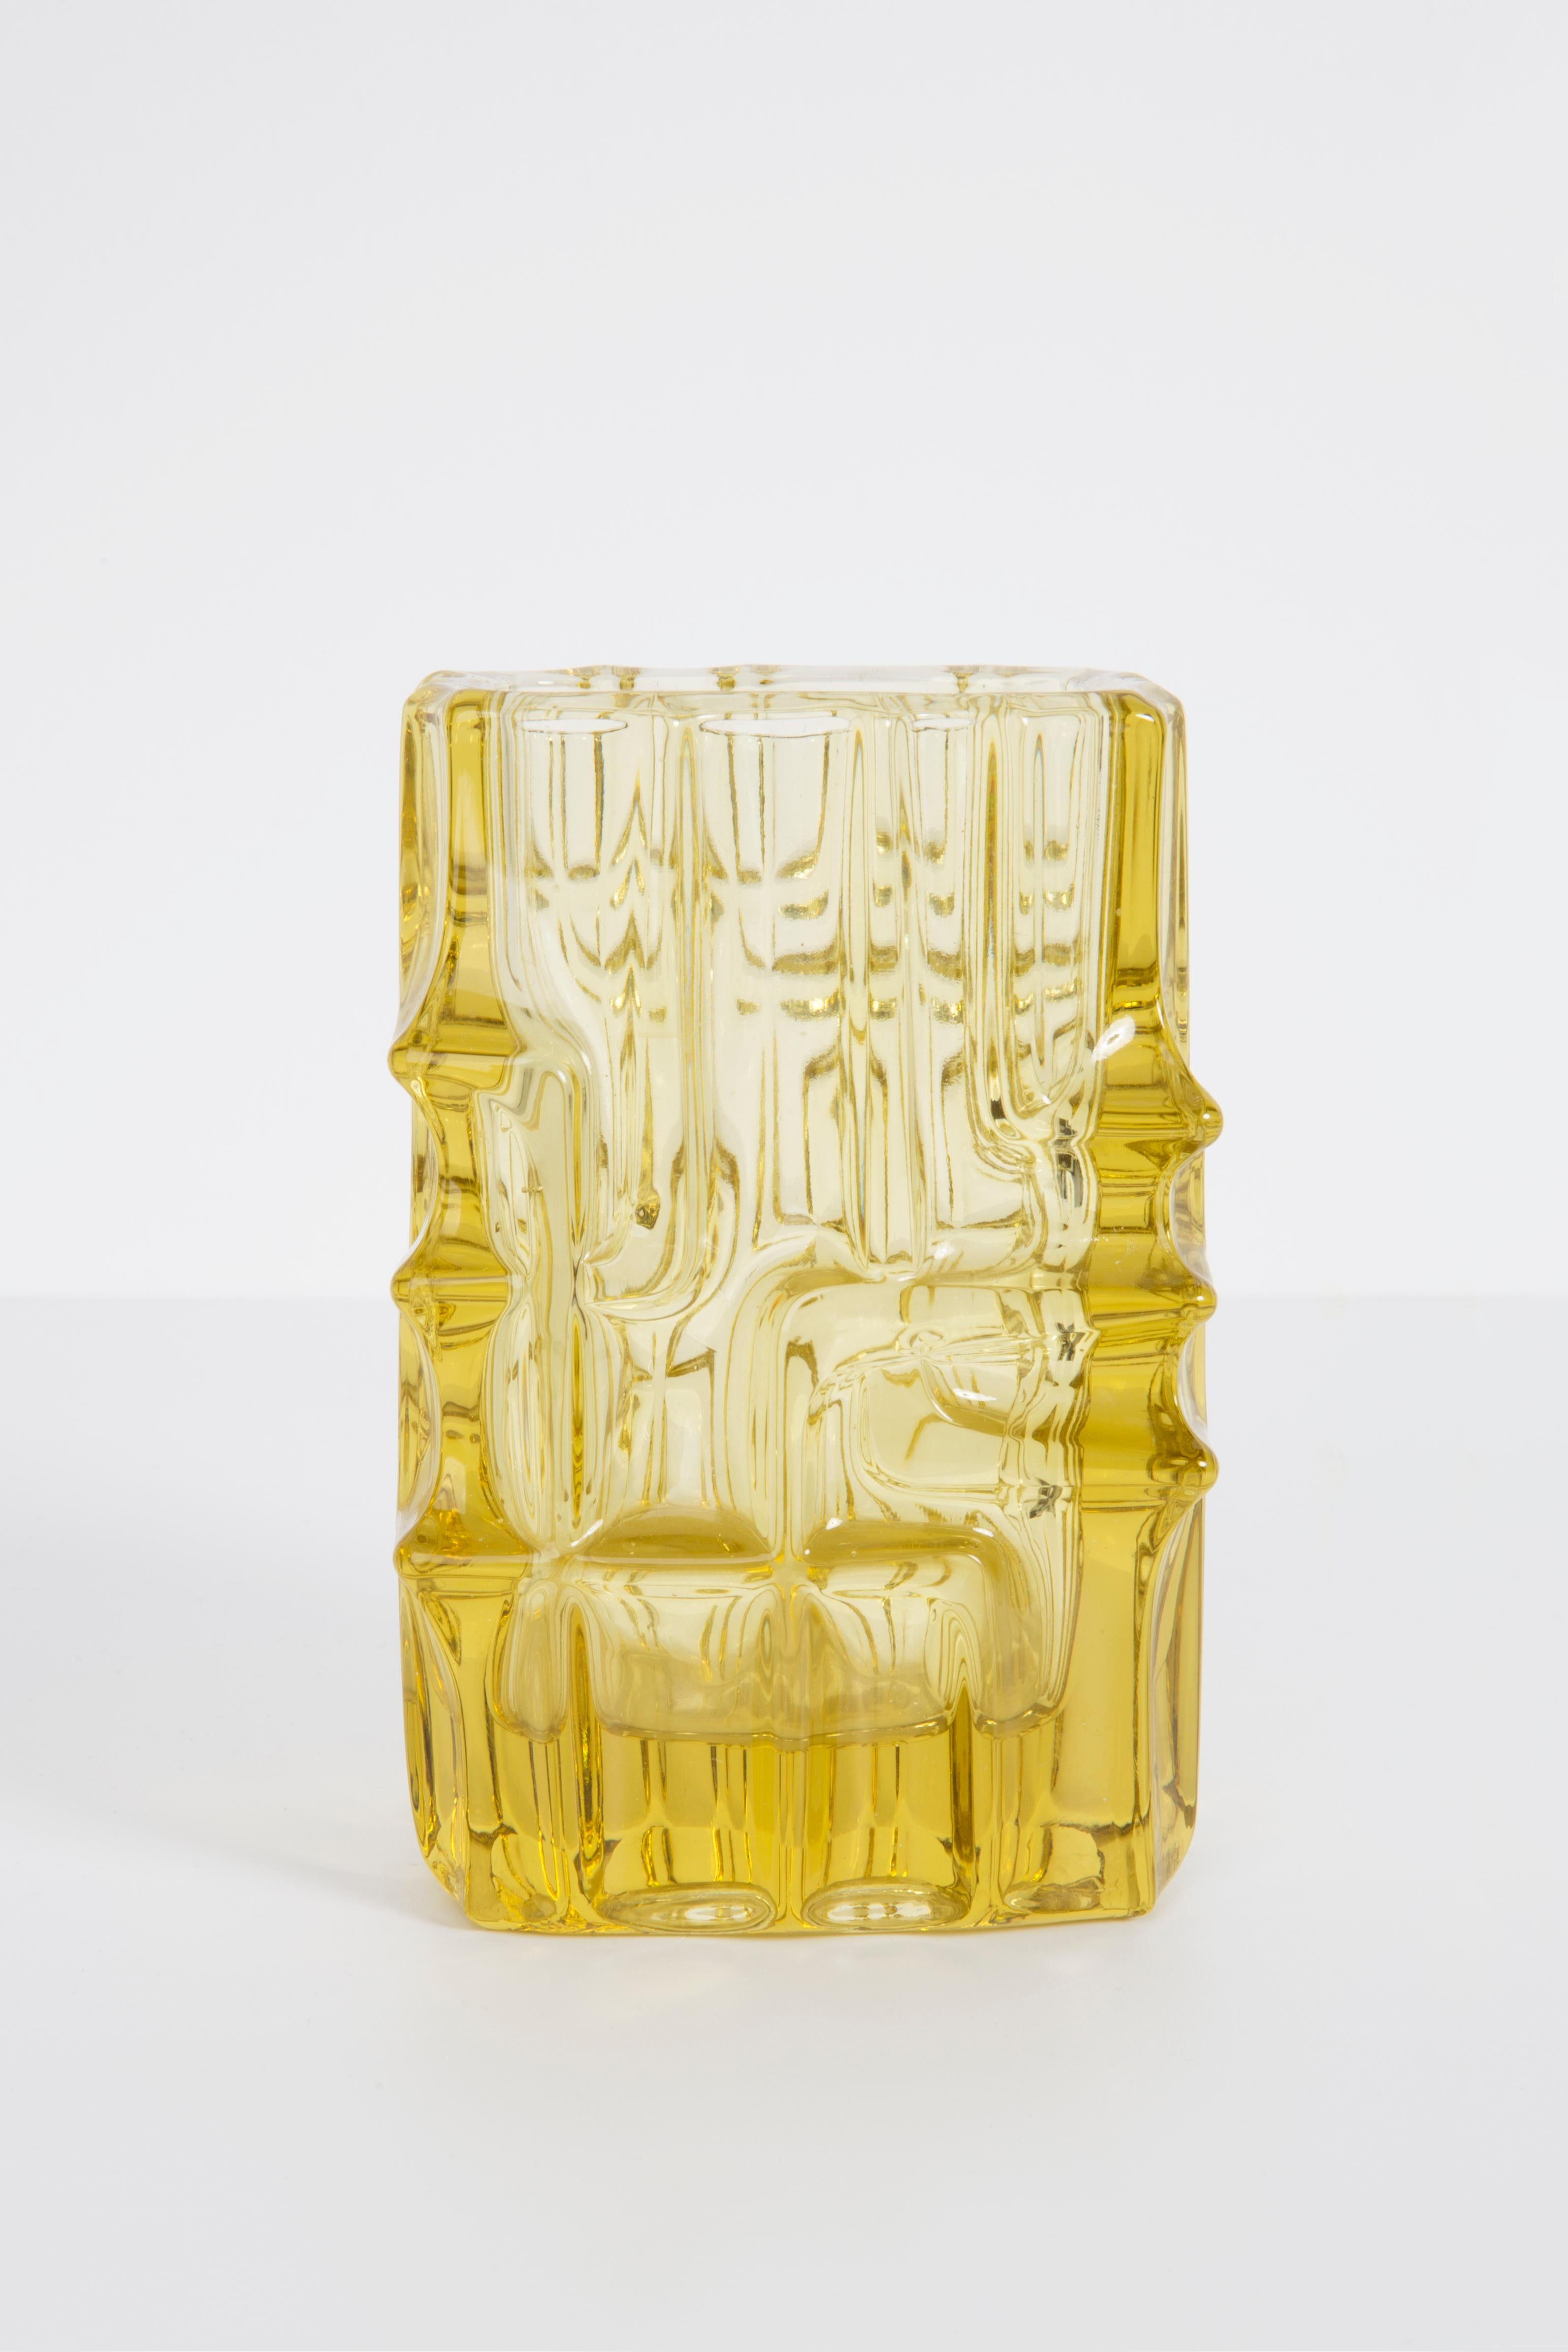 Vase jaune clair de Vladislav Urban, créateur de verre tchécoslovaque. Produit dans les années 1960.
Verre pressé en parfait état. Le vase semble avoir été sorti de sa boîte.
Pas d'accrocs, de défauts, etc. La surface extérieure en relief,